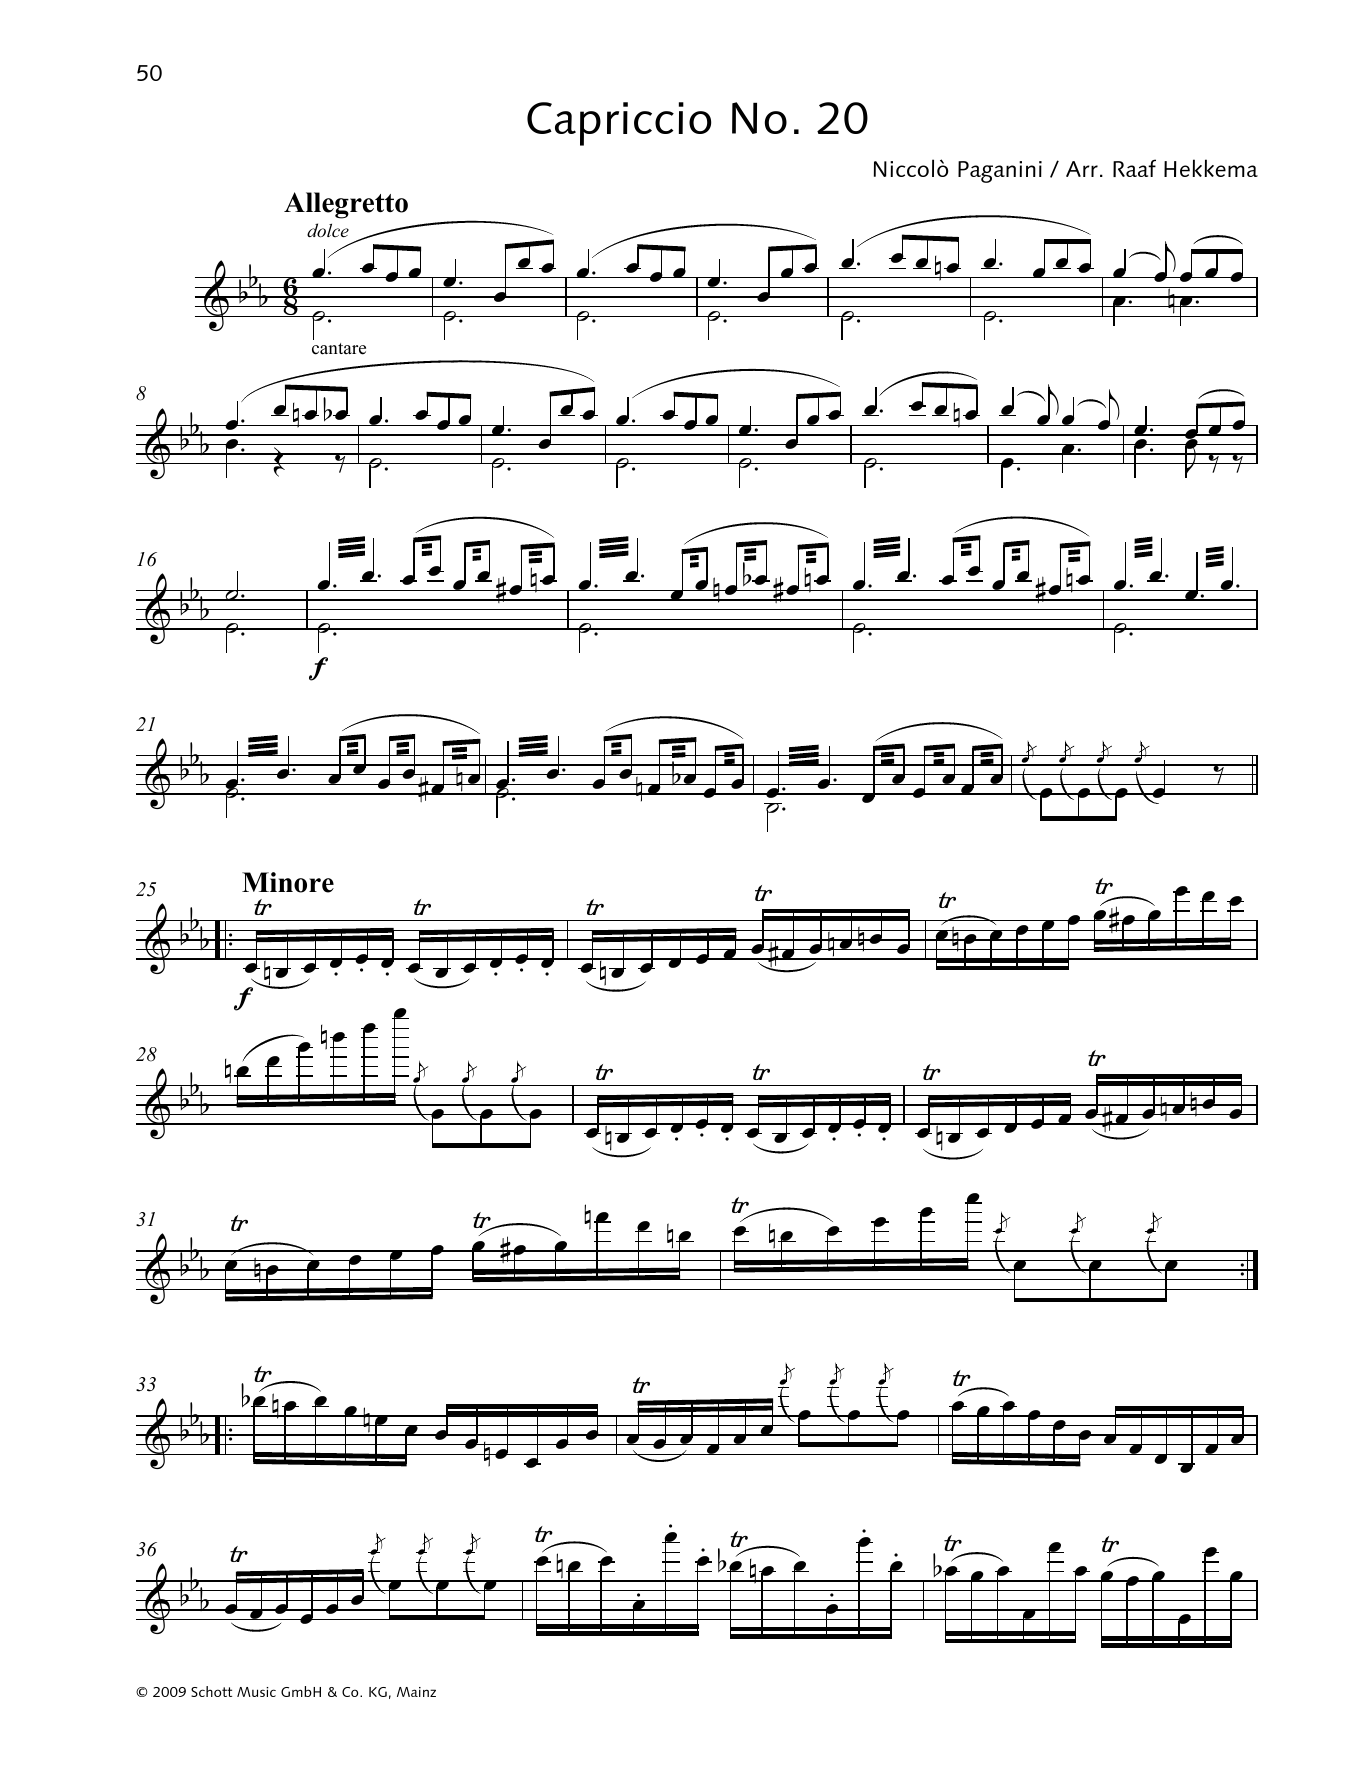 Download Niccolo Paganini Capriccio No. 20 Sheet Music